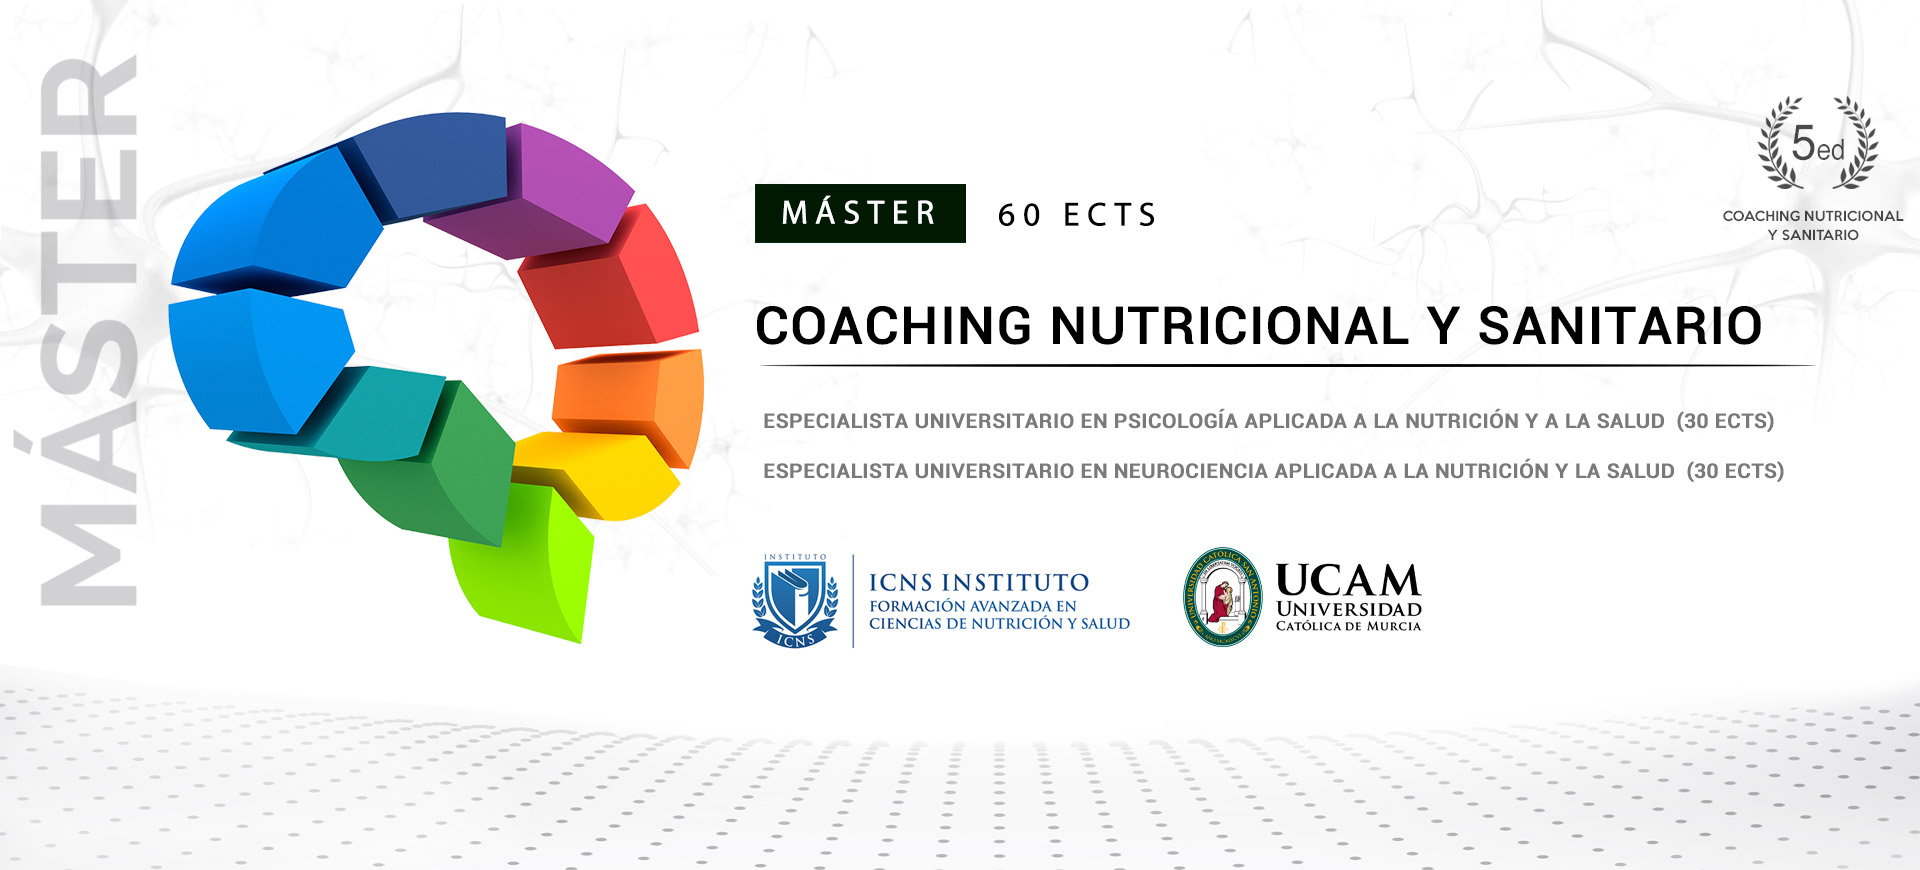 Mster en Coaching Nutricional y Sanitario